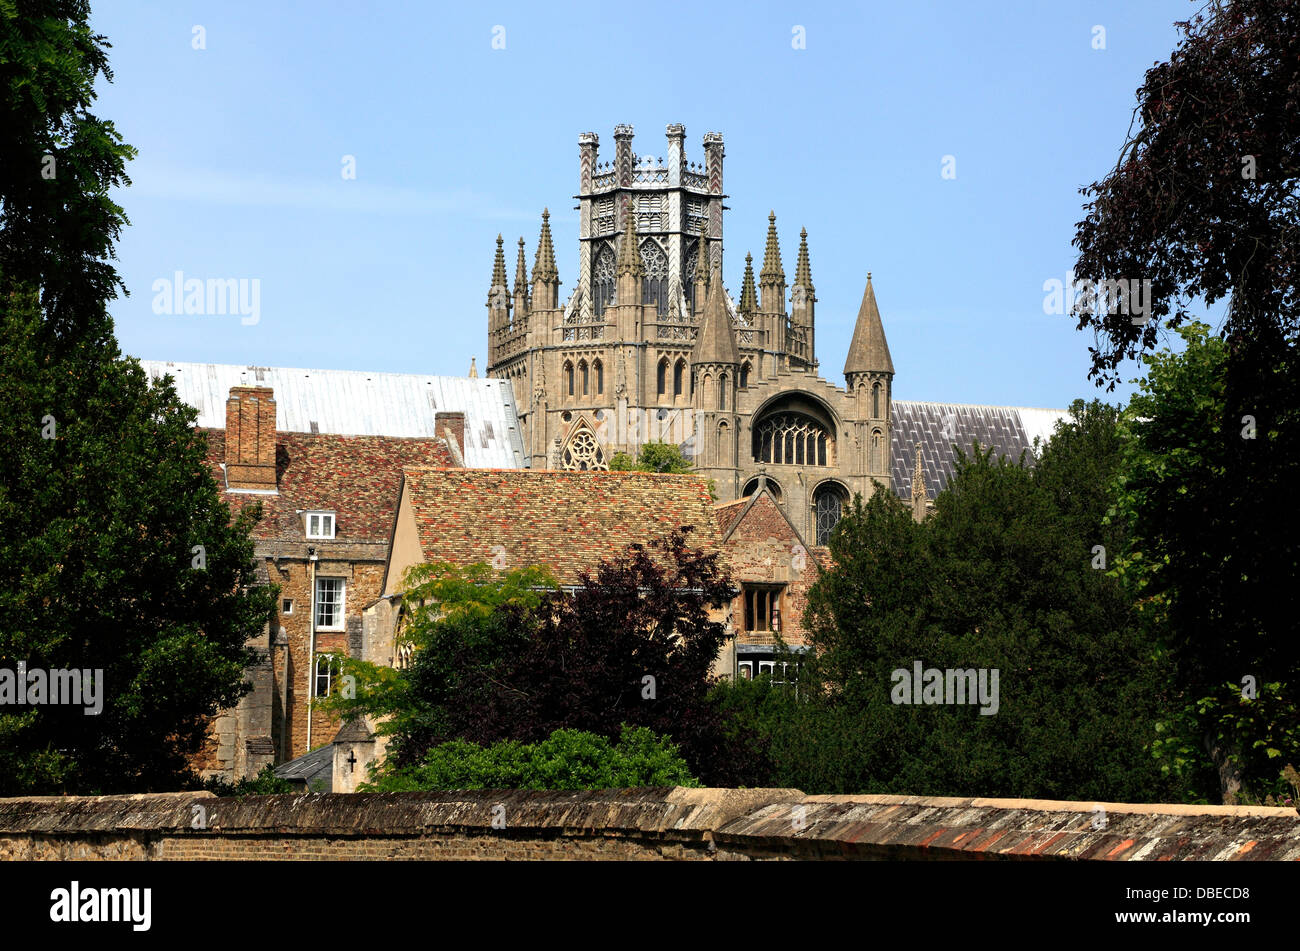 Cathédrale d'Ely, l'Octogone et de la Lanterne Tours, Cambridgeshire, Angleterre, Royaume-Uni Anglais cathédrales médiévales de la tour de la Cité parlementaire Banque D'Images